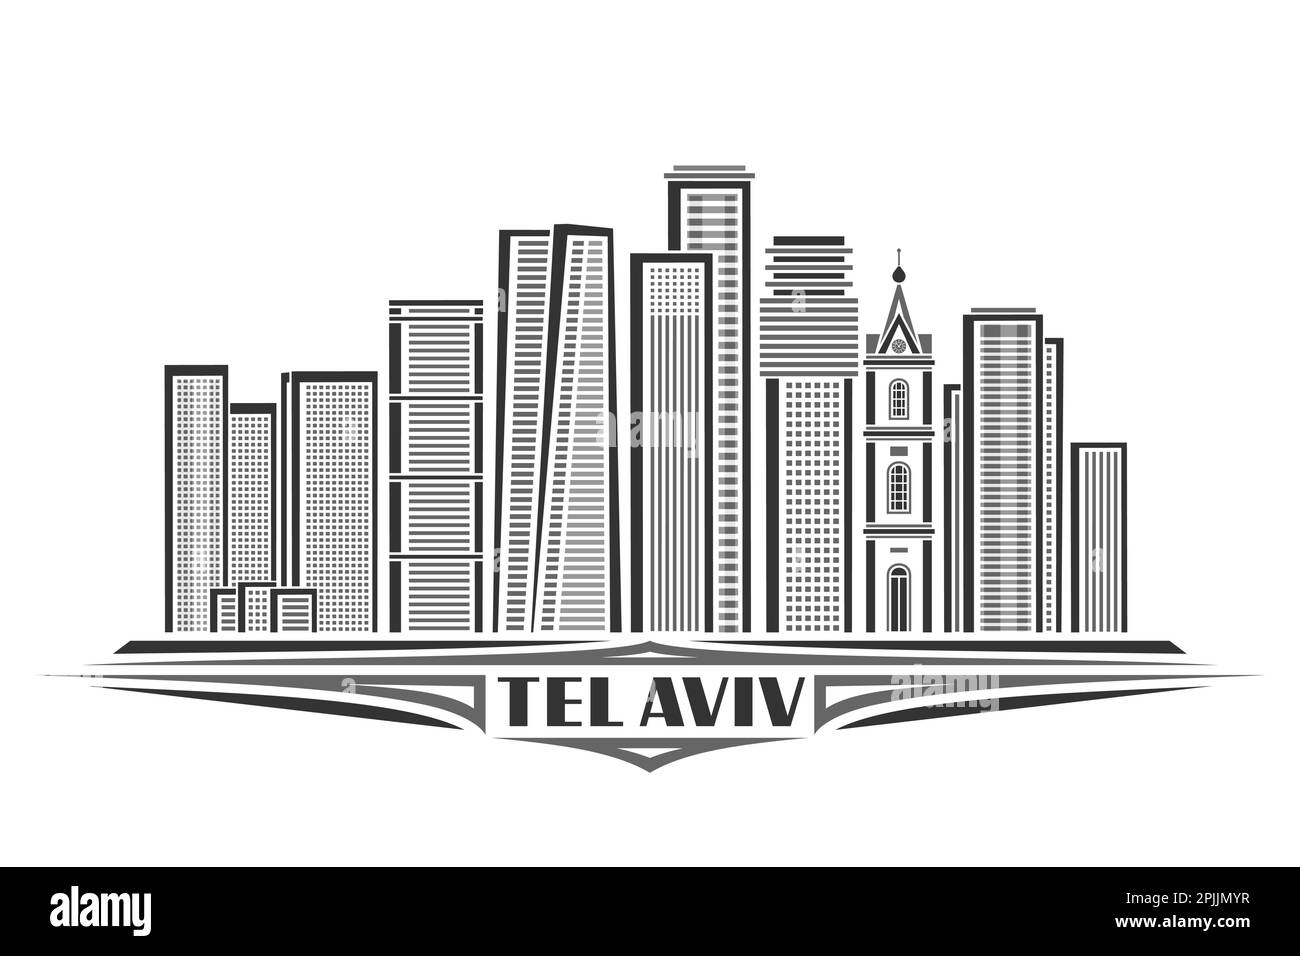 Illustrazione vettoriale di Tel Aviv, carta orizzontale monocromatica con design lineare famoso paesaggio urbano di israele, linea urbana nera arte concetto con unico brus Illustrazione Vettoriale